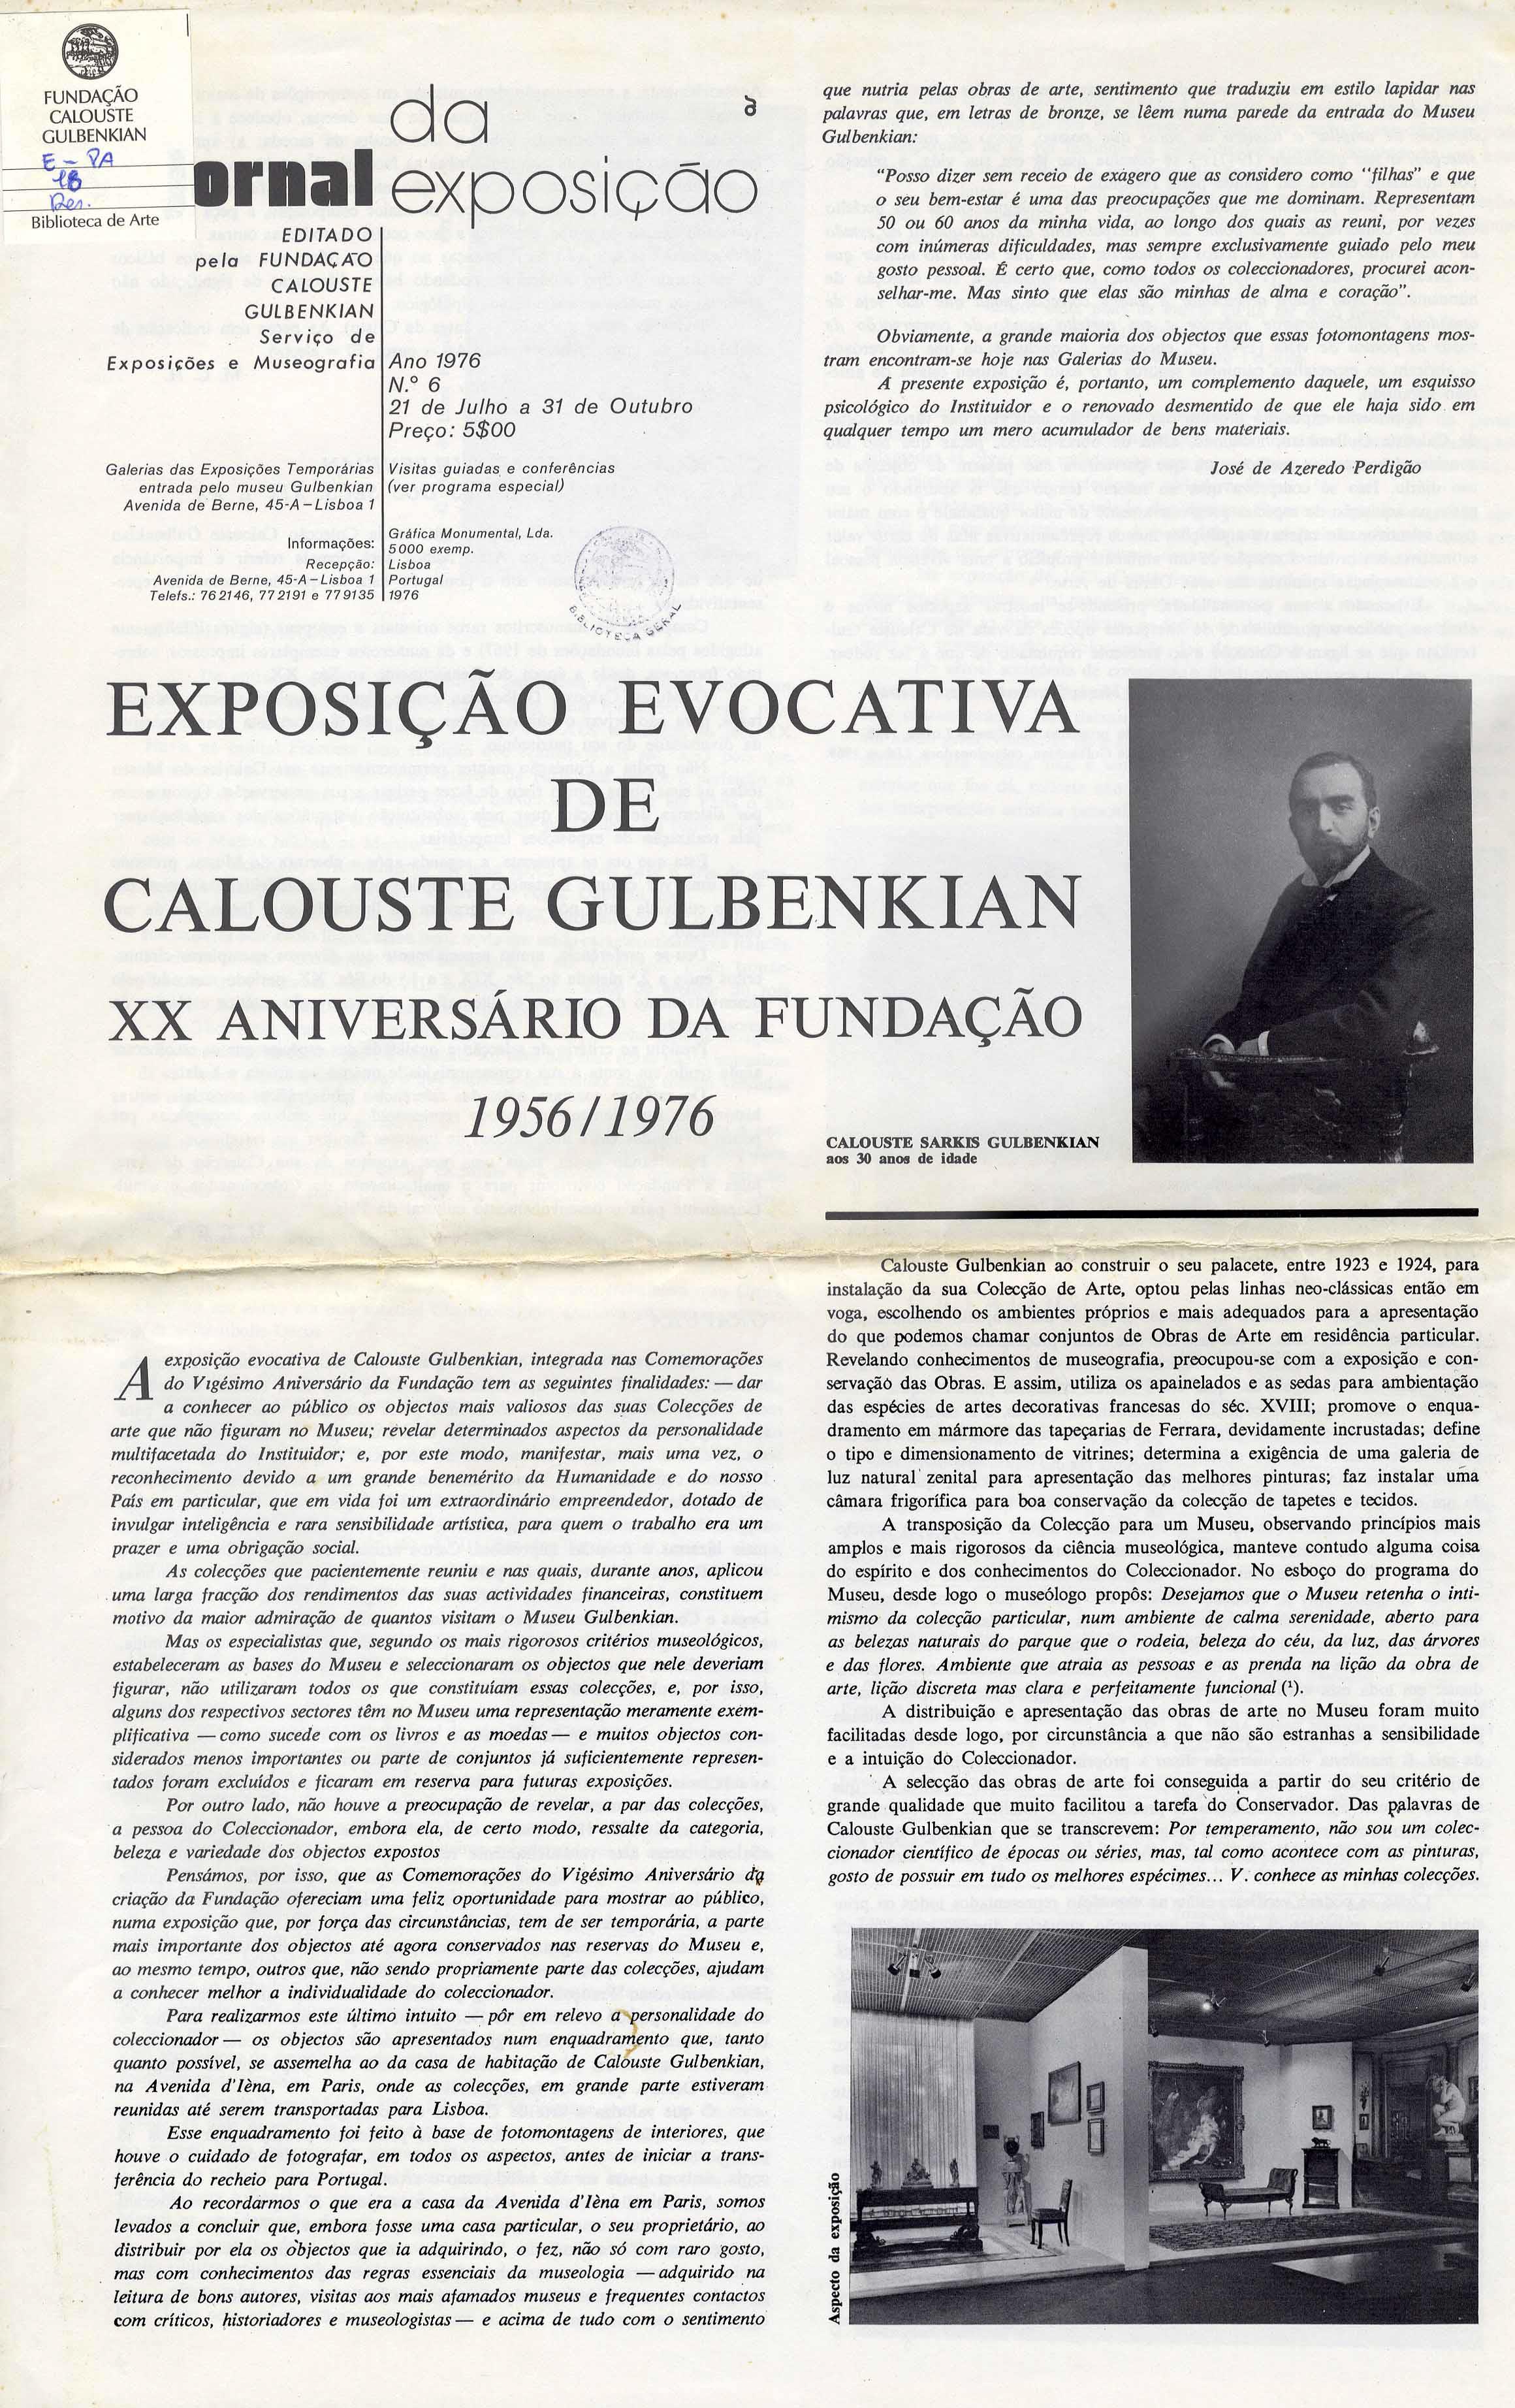 Exposição Evocativa de Calouste Gulbenkian. XX Aniversário da Fundação Calouste Gulbenkian, 1956 – 1976